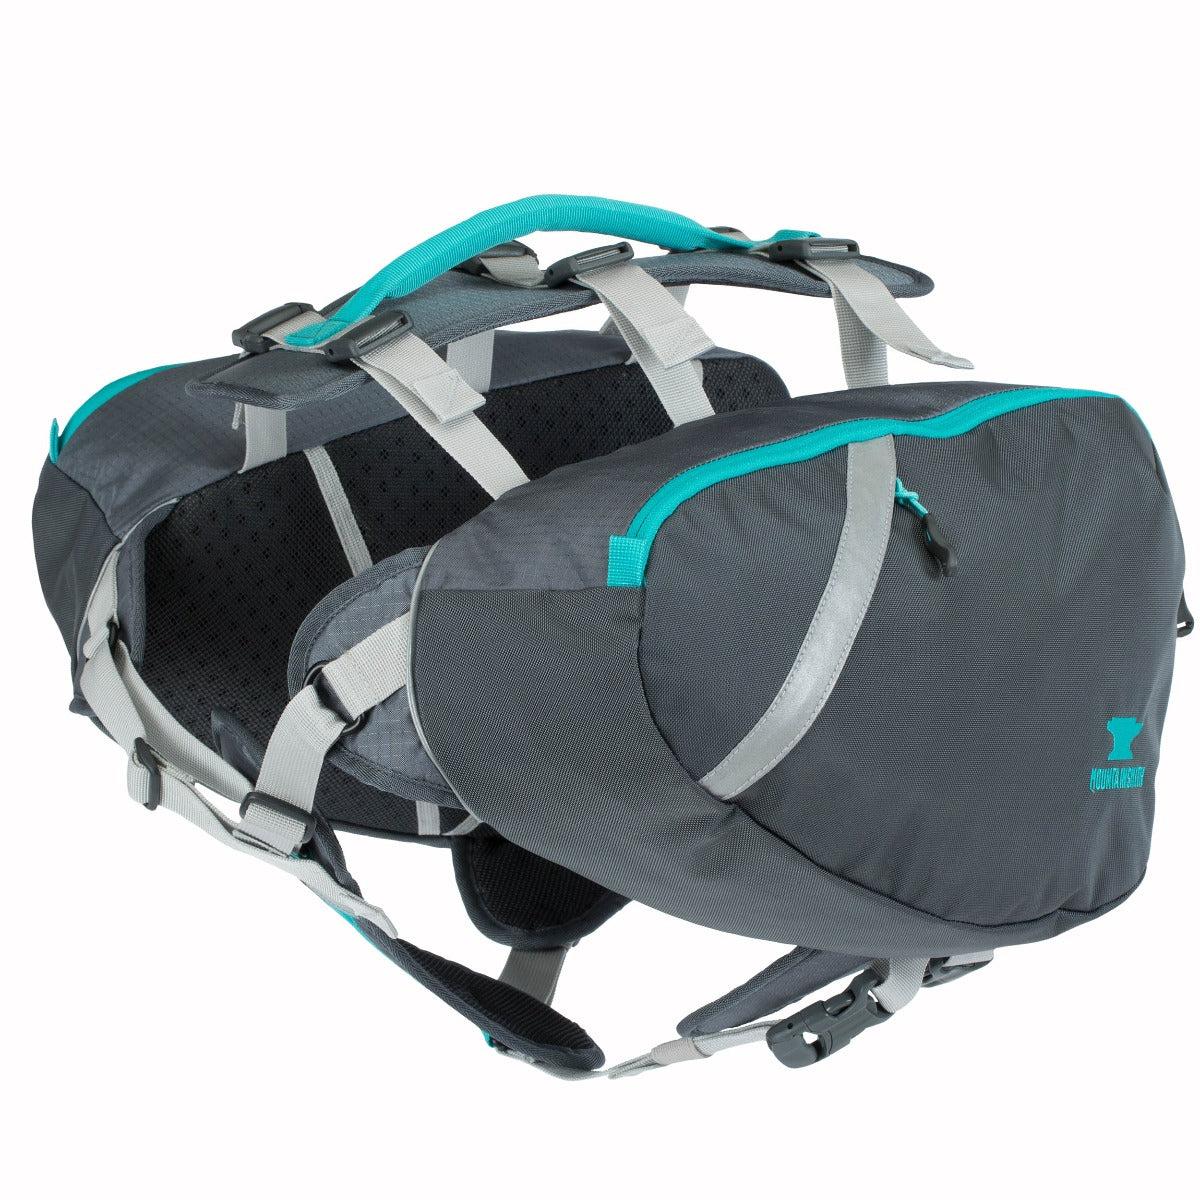 Dog Backpack Harness, Dog Saddle Bag | Dog/K9 Harness + Detachable Backpack